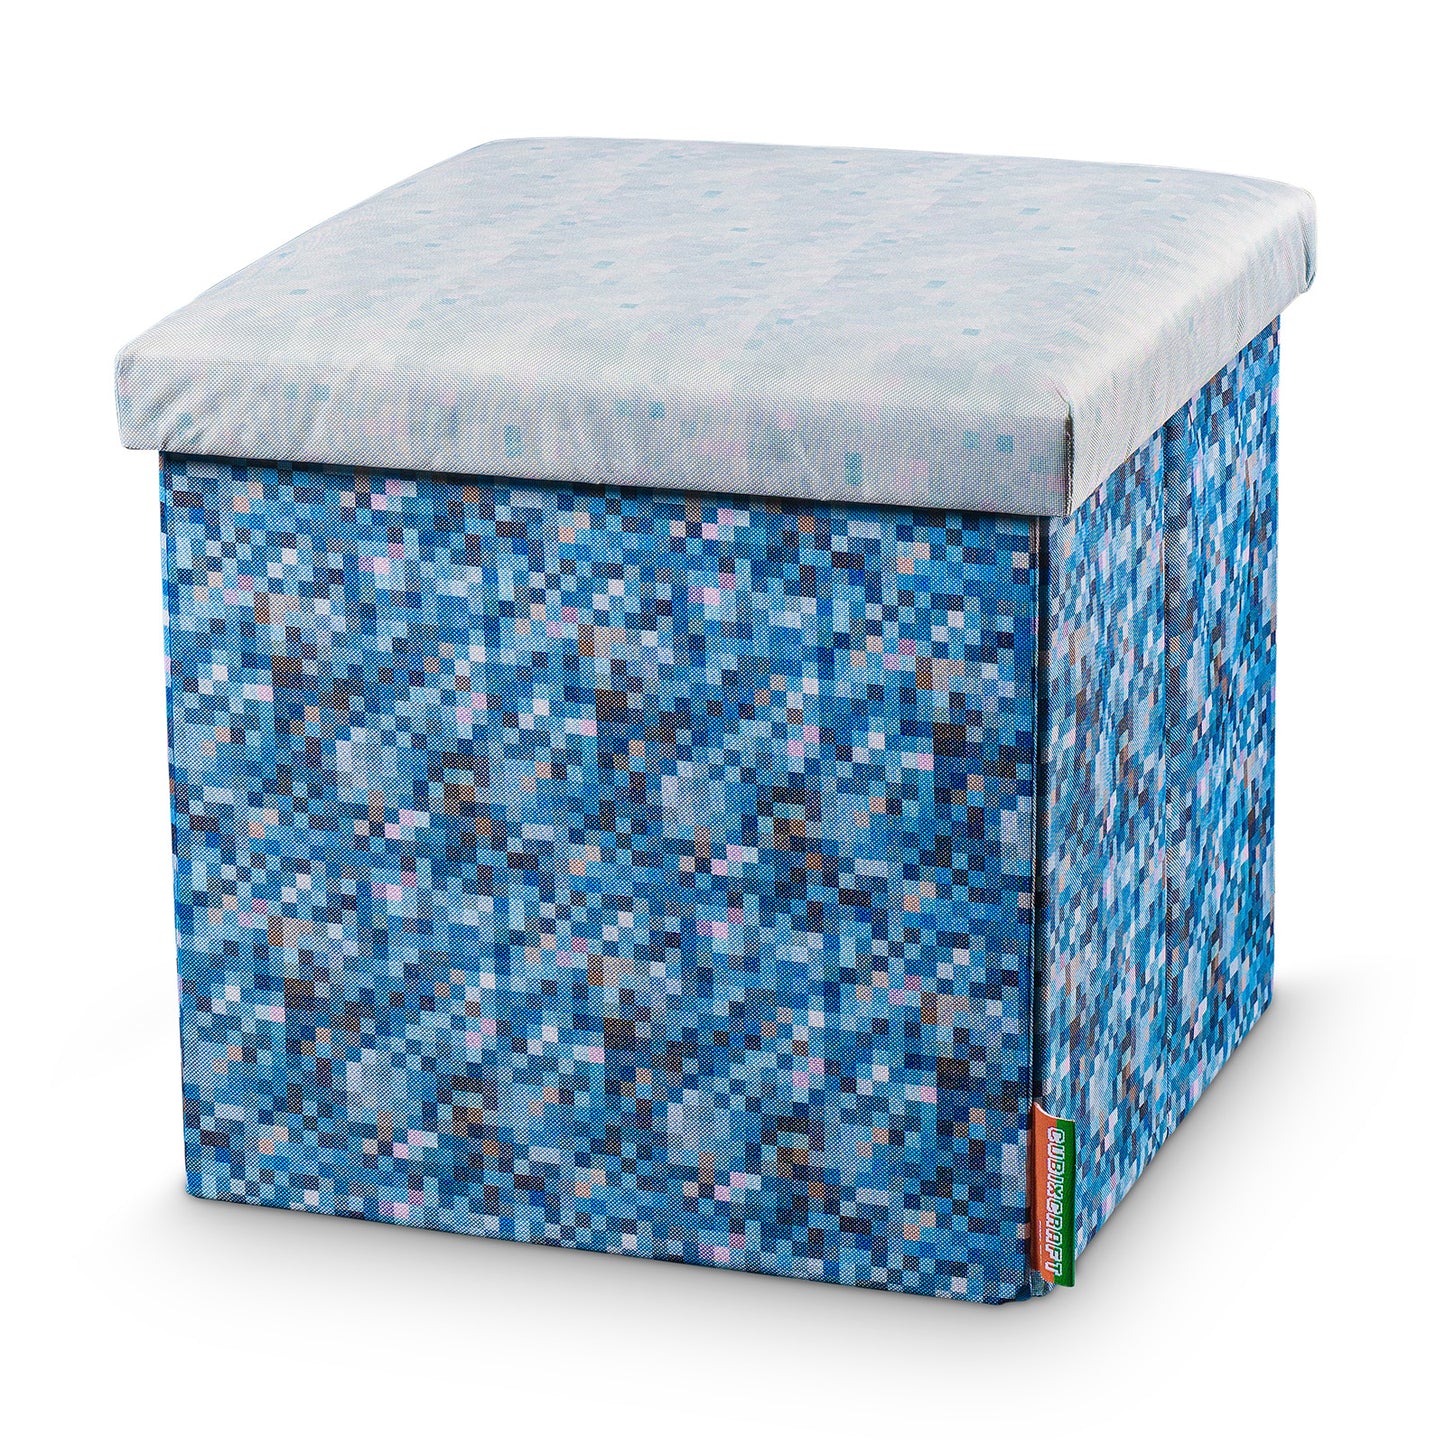 Seat cube box in pixel design "frozen ground"